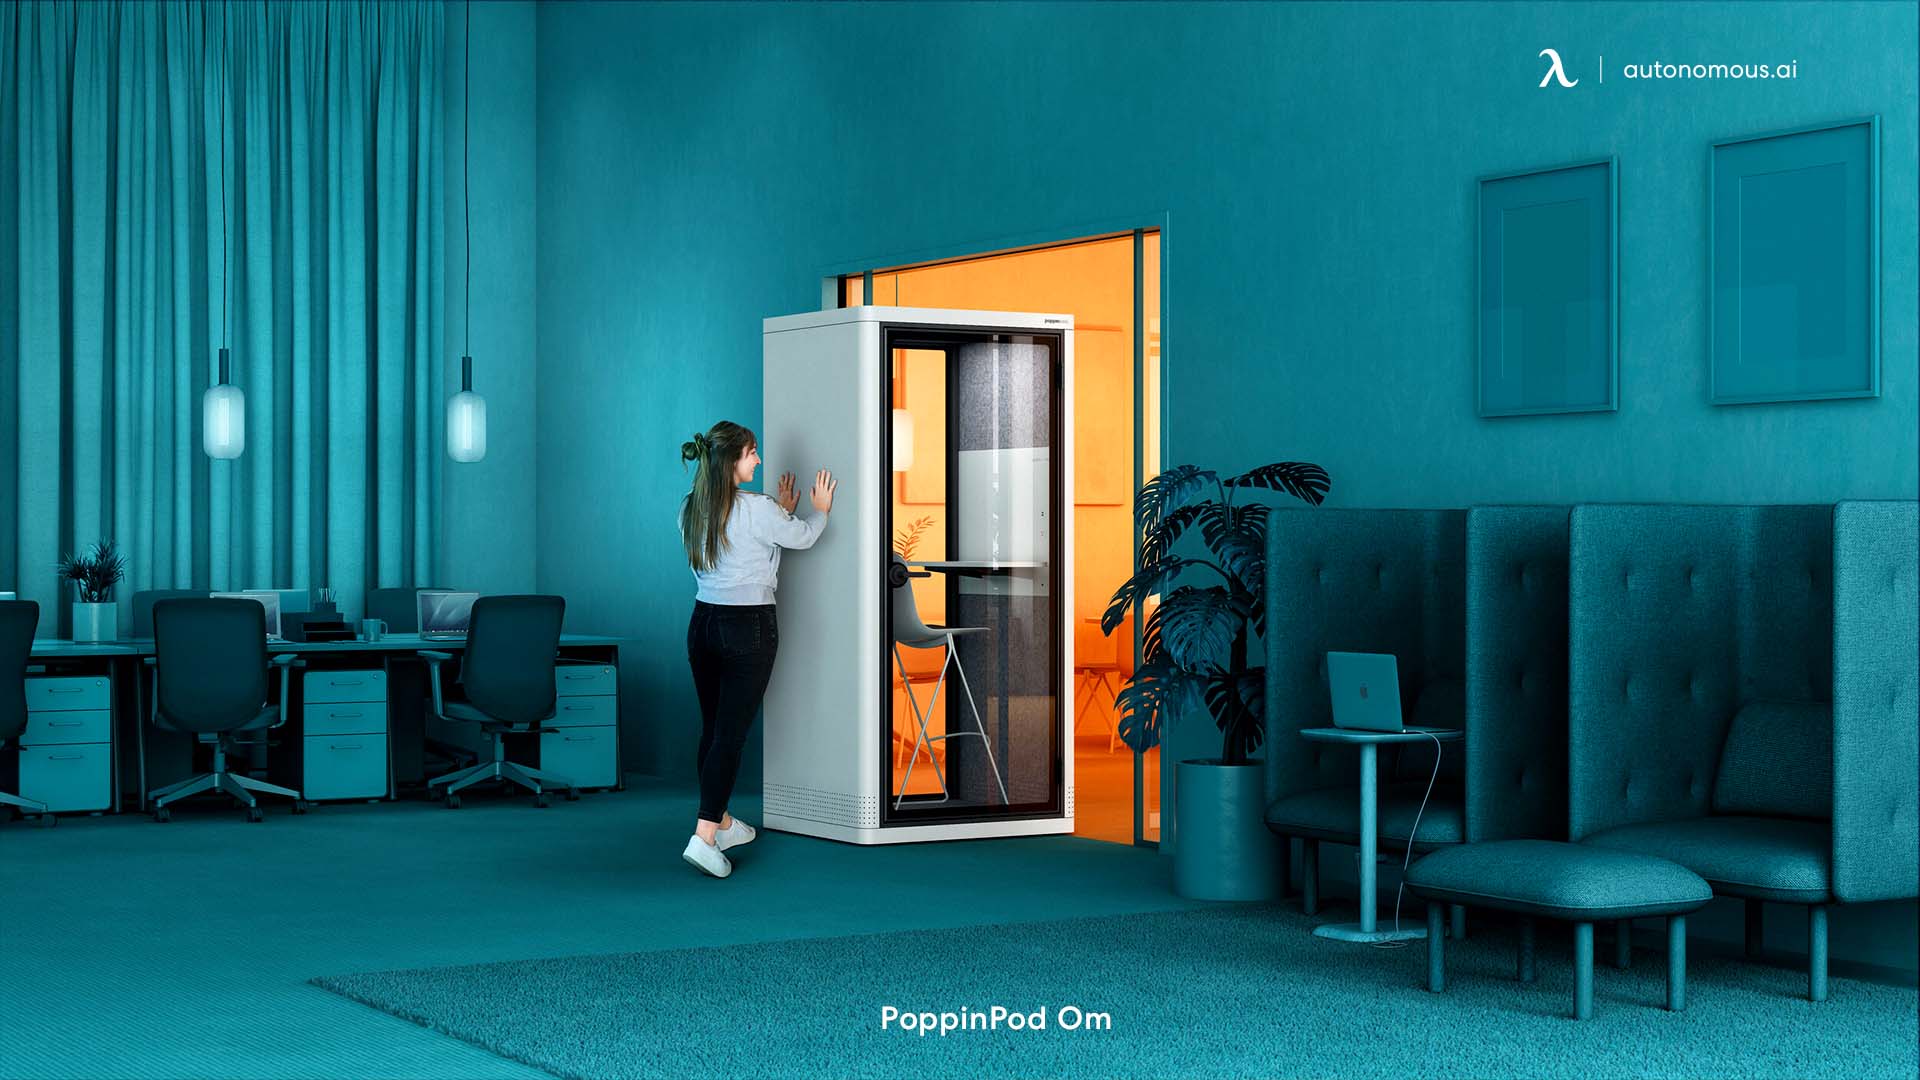 PoppinPod Om soundproof office pod